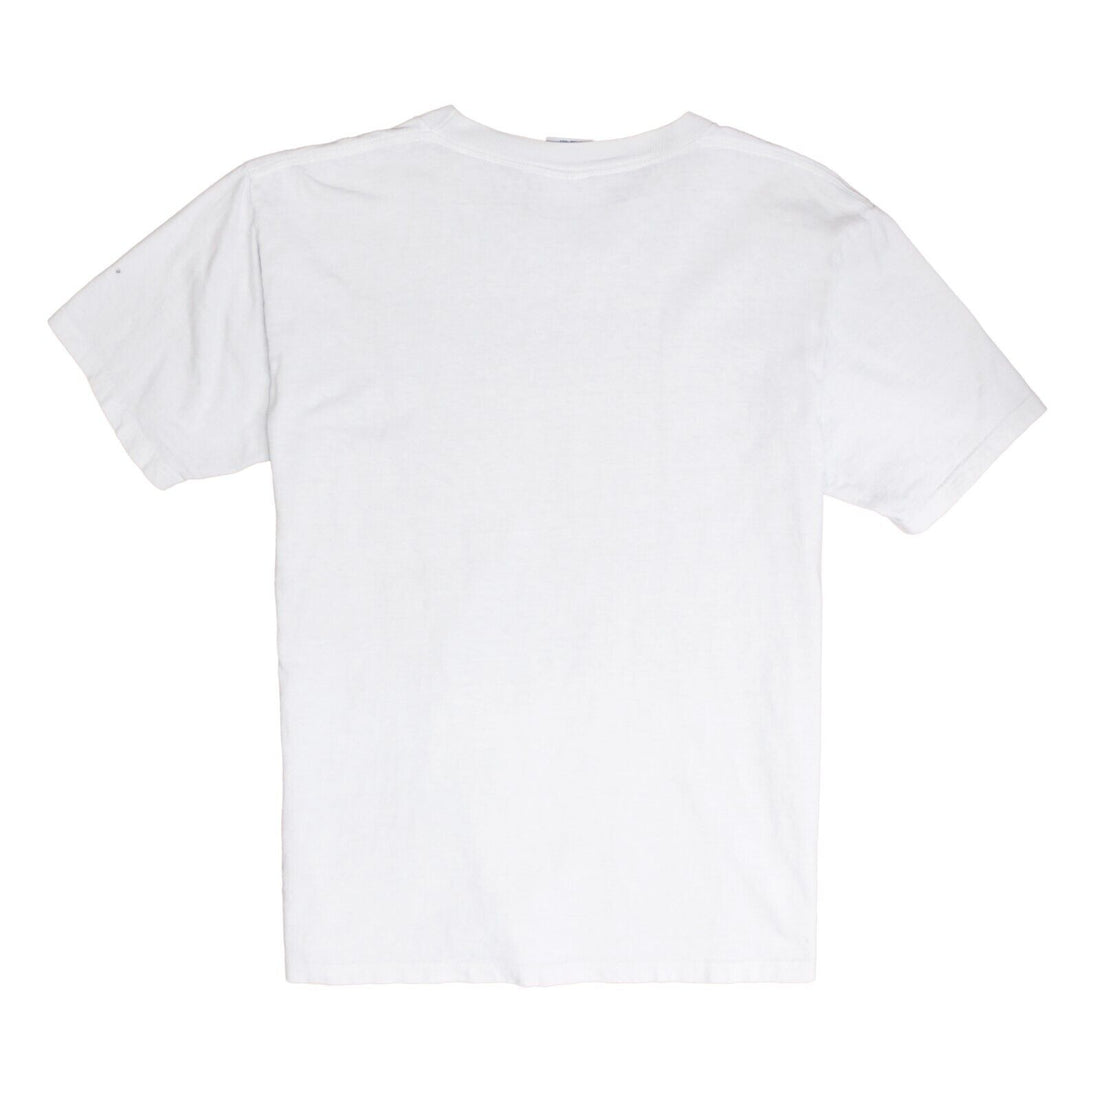 Vintage Toronto Blue Jays Trench T-Shirt Size Medium White 1995 90s MLB